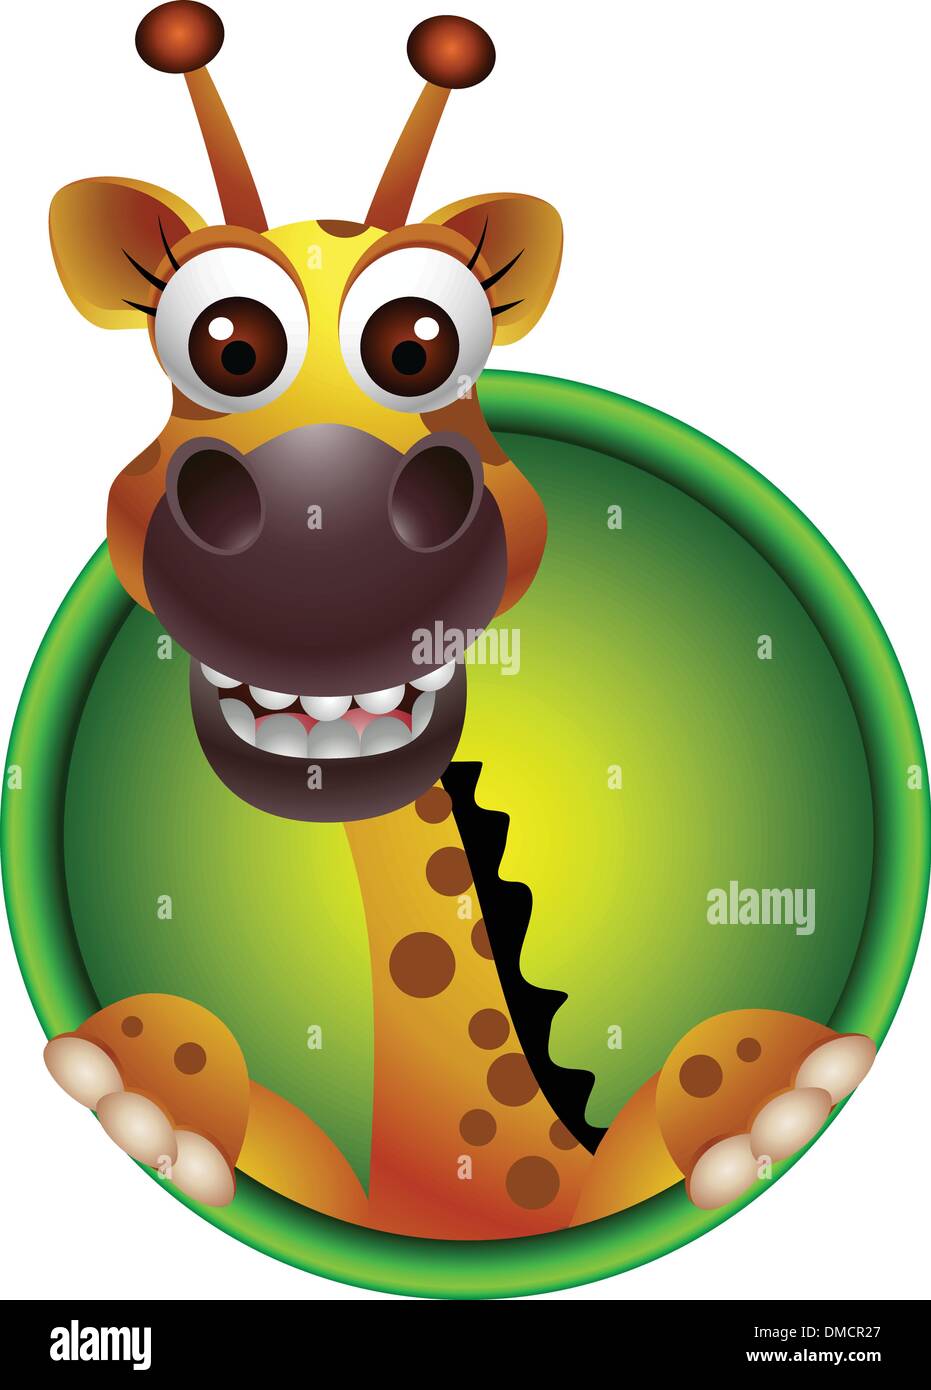 cute giraffe head cartoon Stock Vector